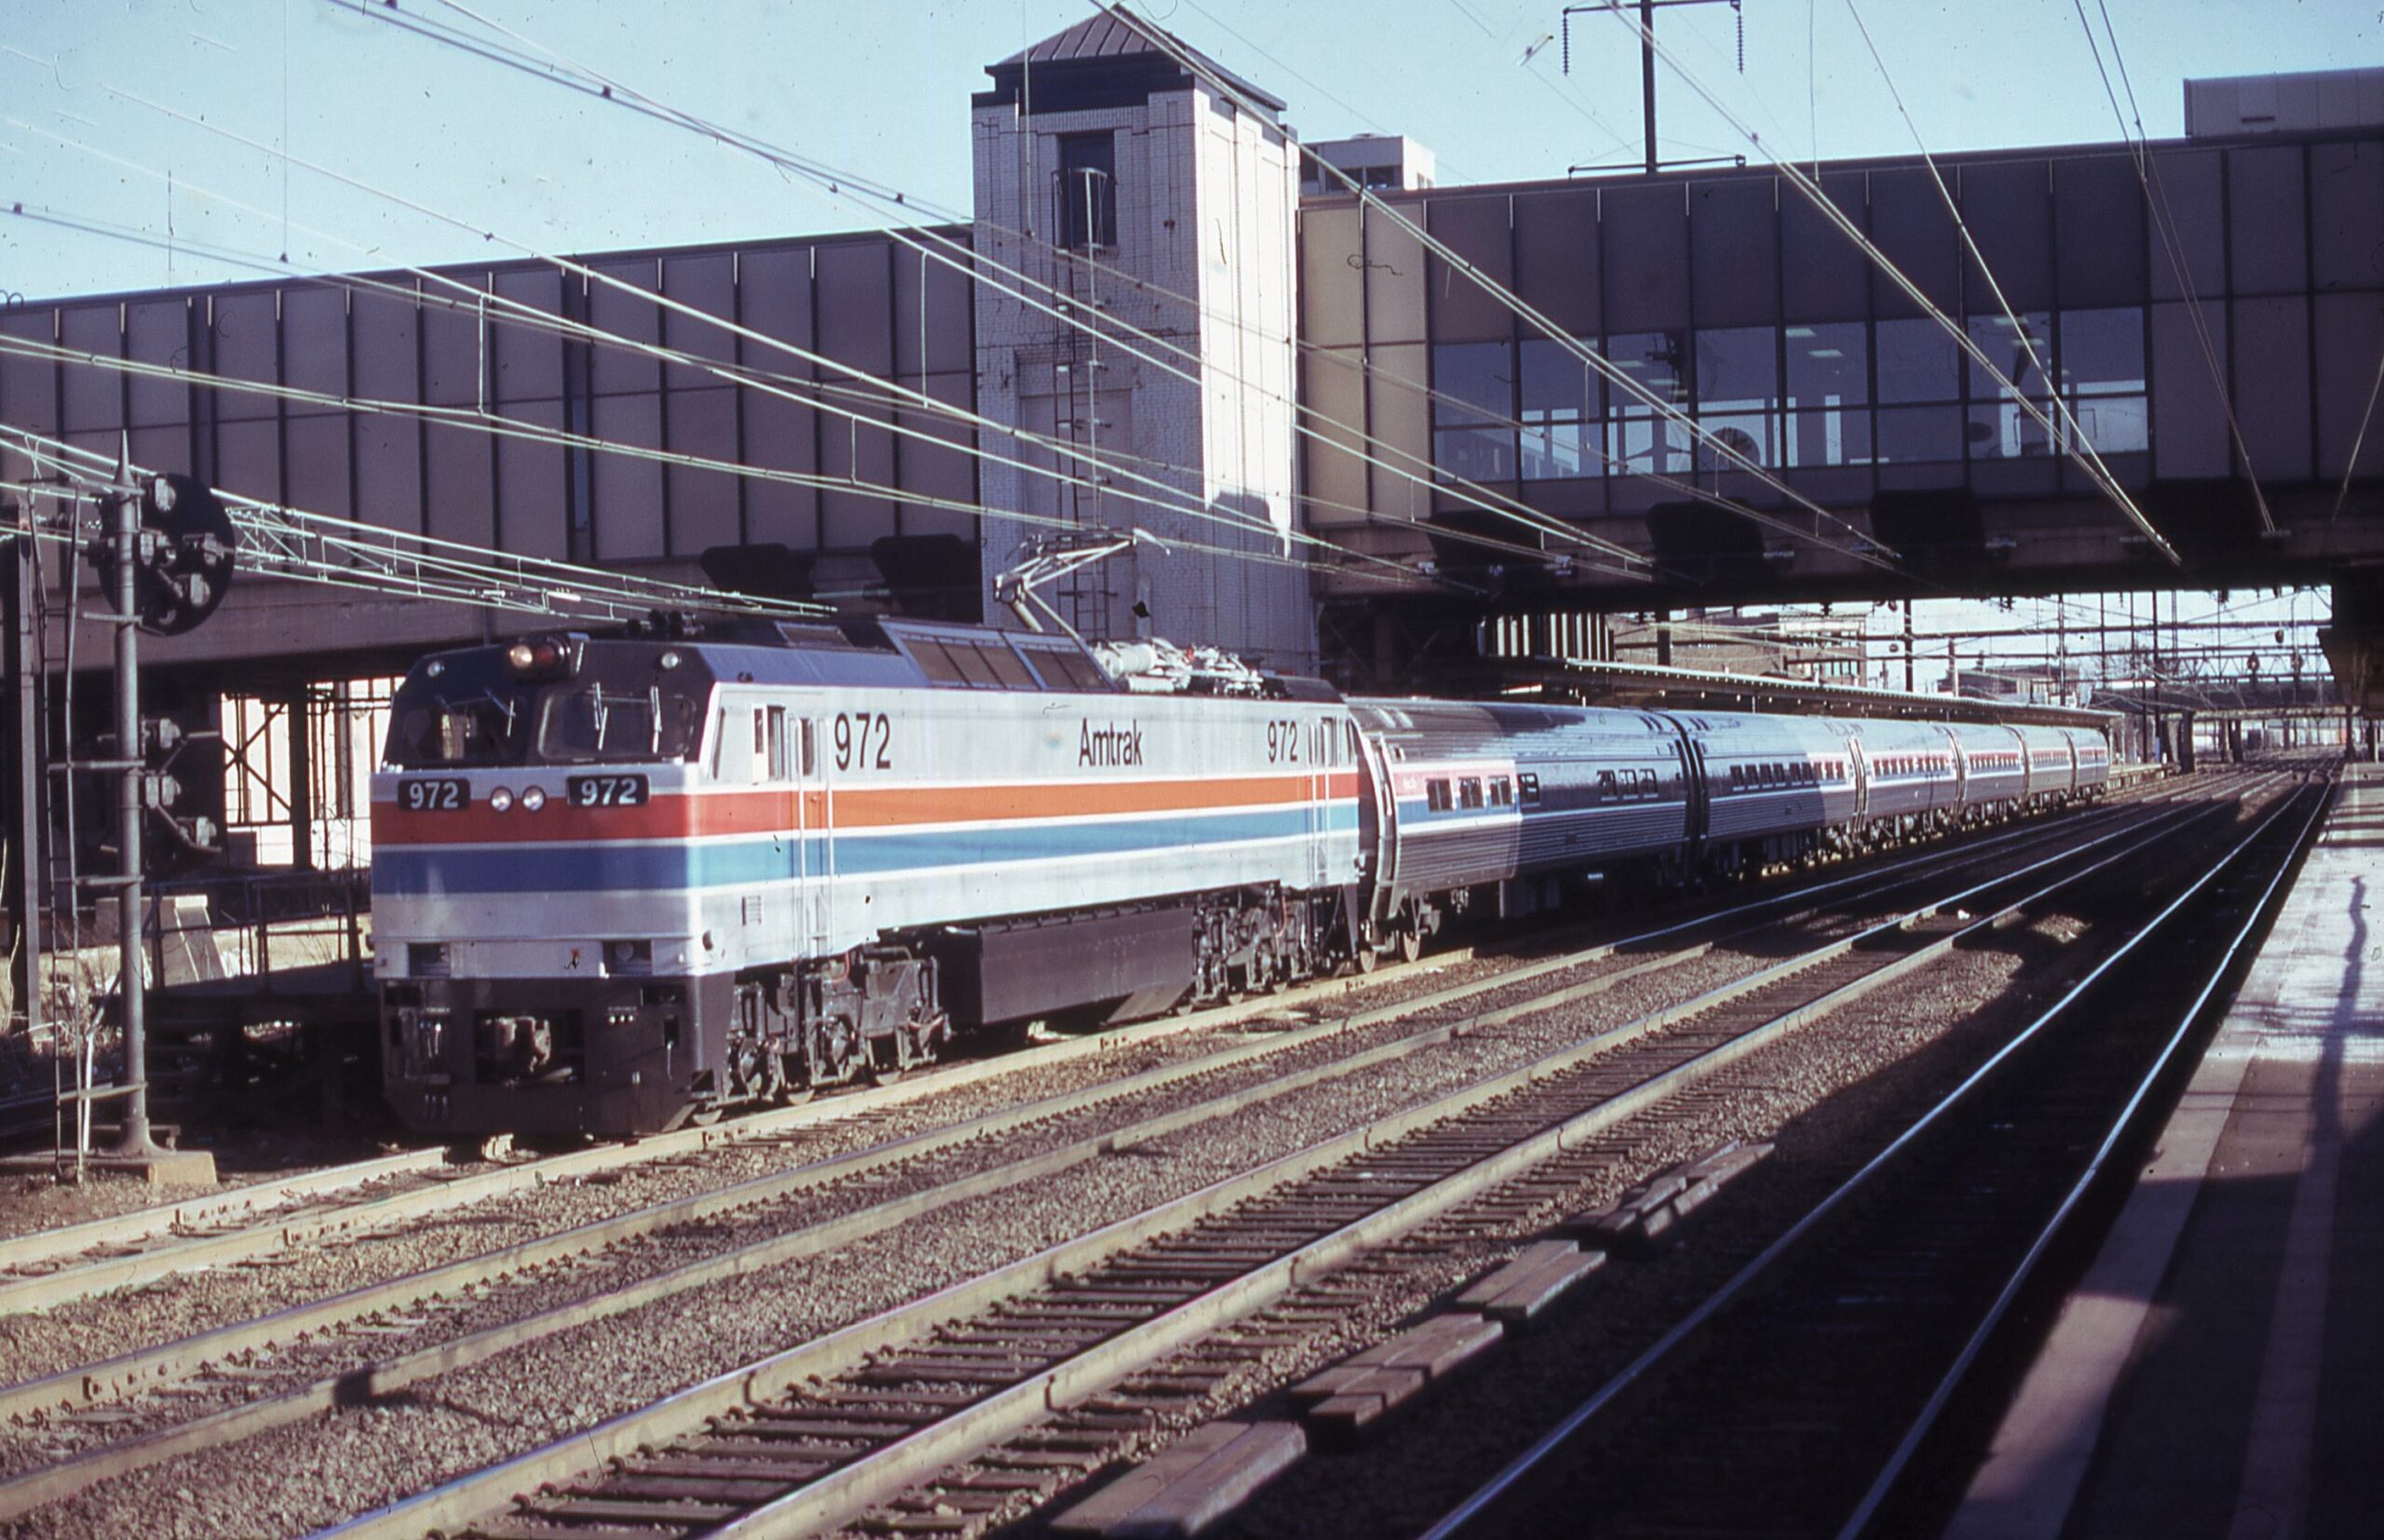 Amtrak | Trenton, New Jersey | E60CP #972 | Passenger train | Trenton, NJ | Amtrak Station | February 1976 | William Rosenberg photograph